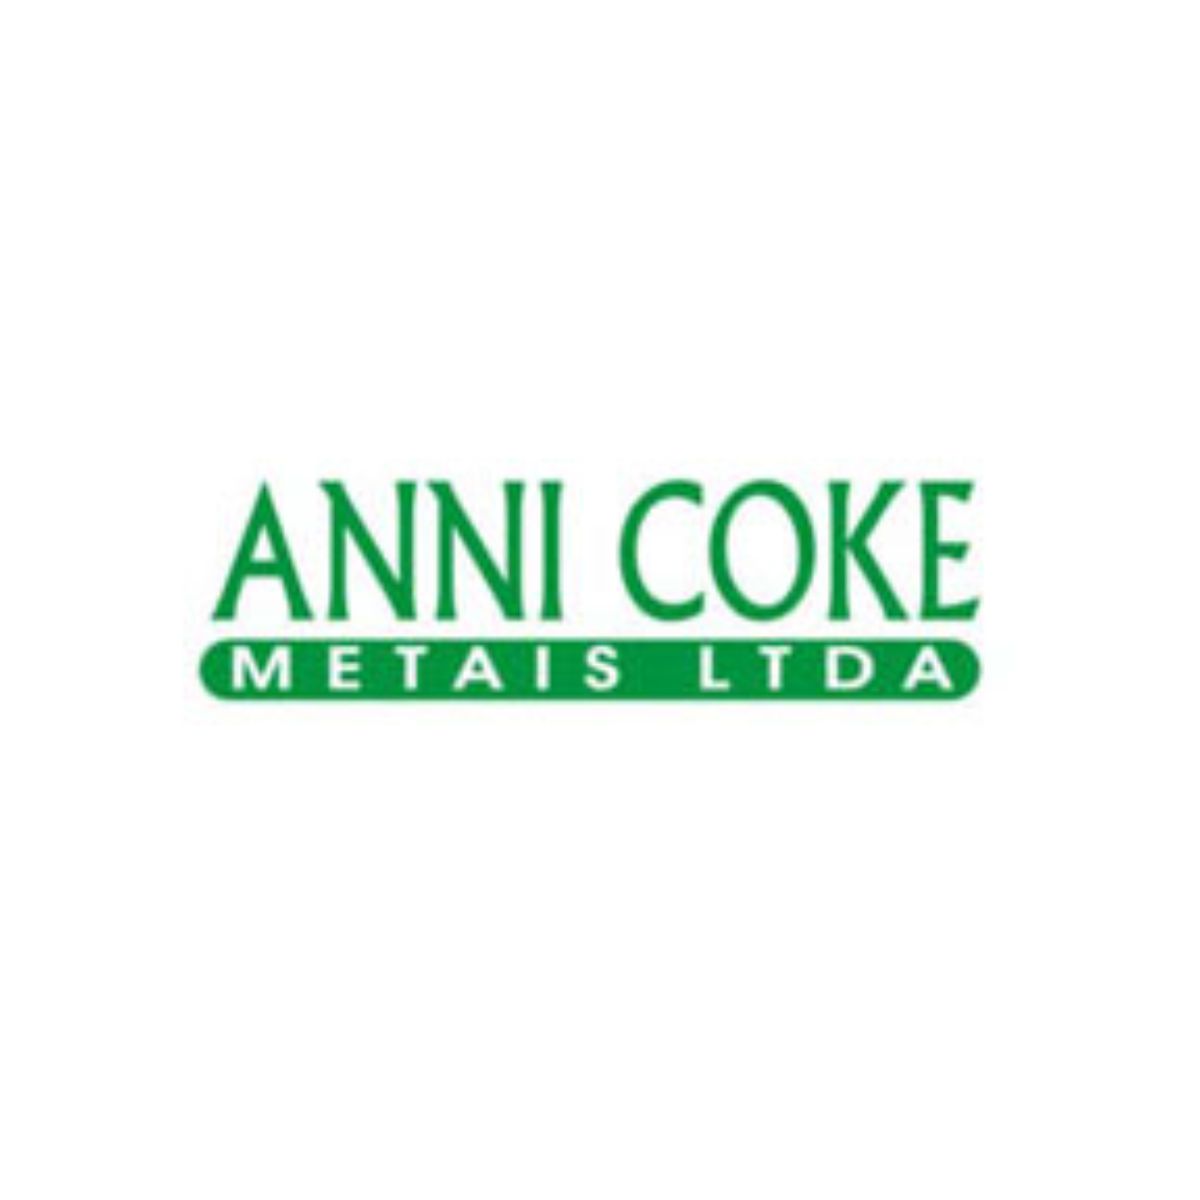 Anni Coke Metais Ltda